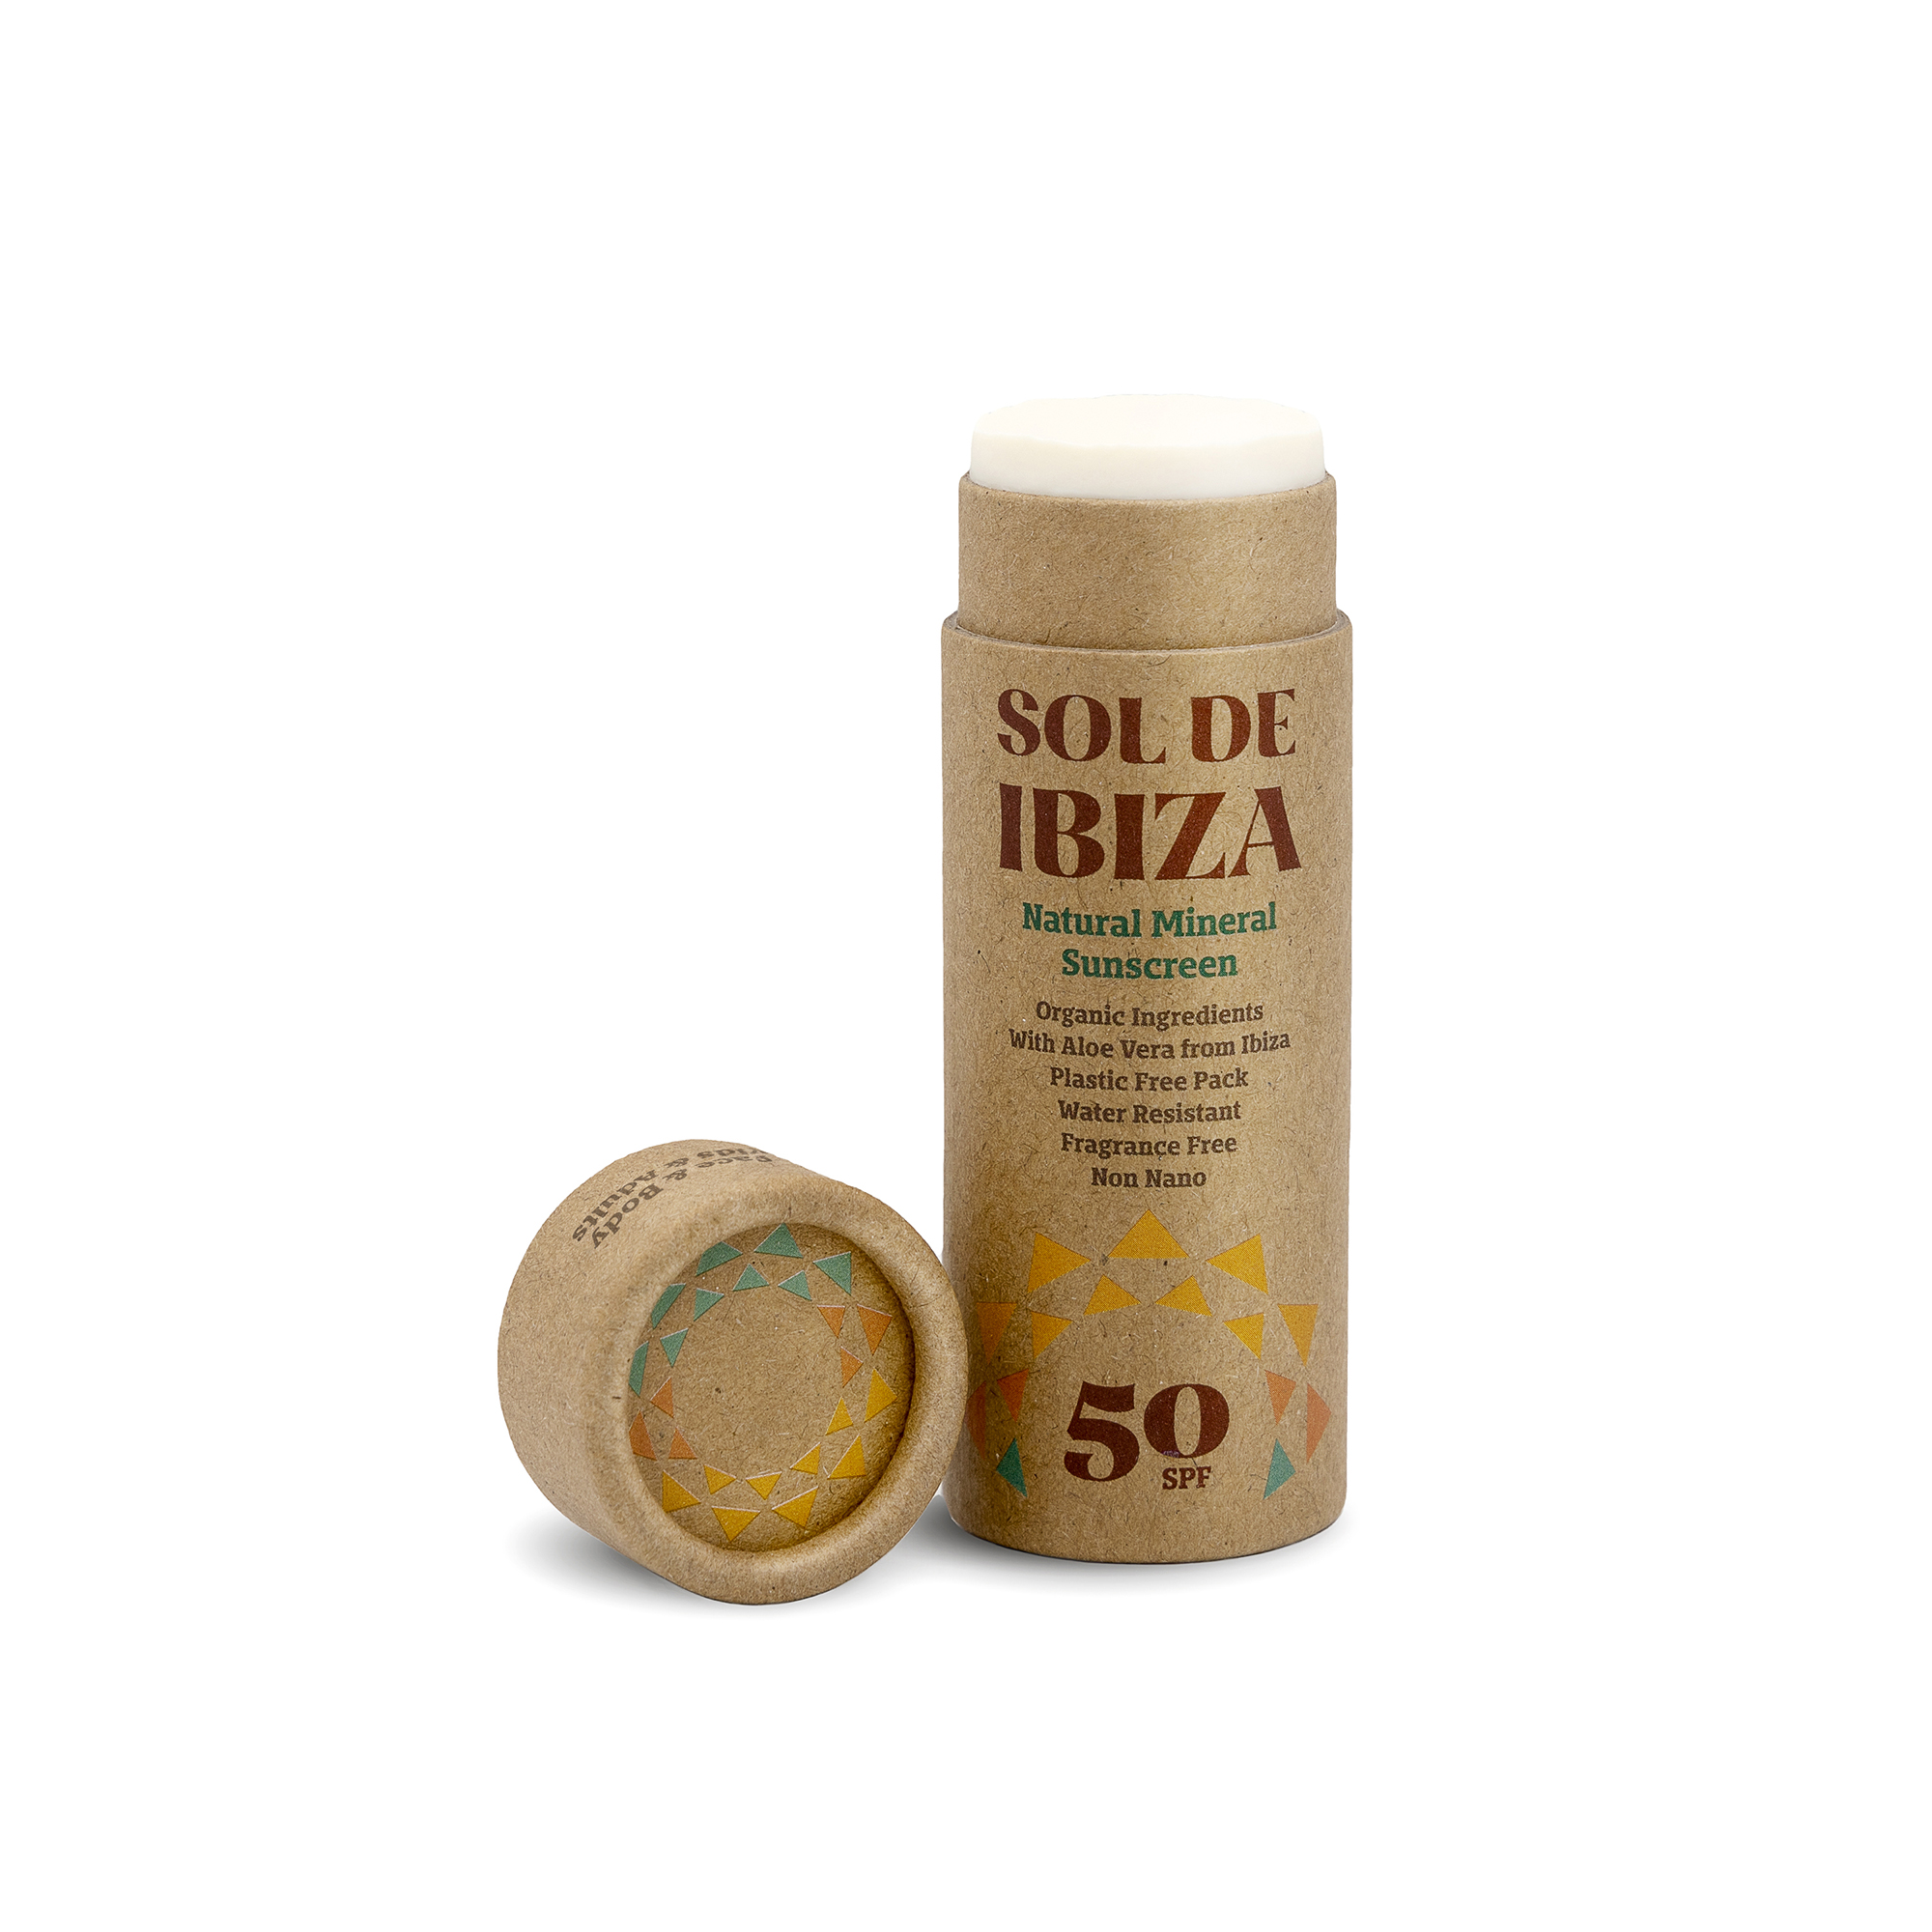 Groothandel Sol de Ibiza zero waste natuurlijke zonnebrand